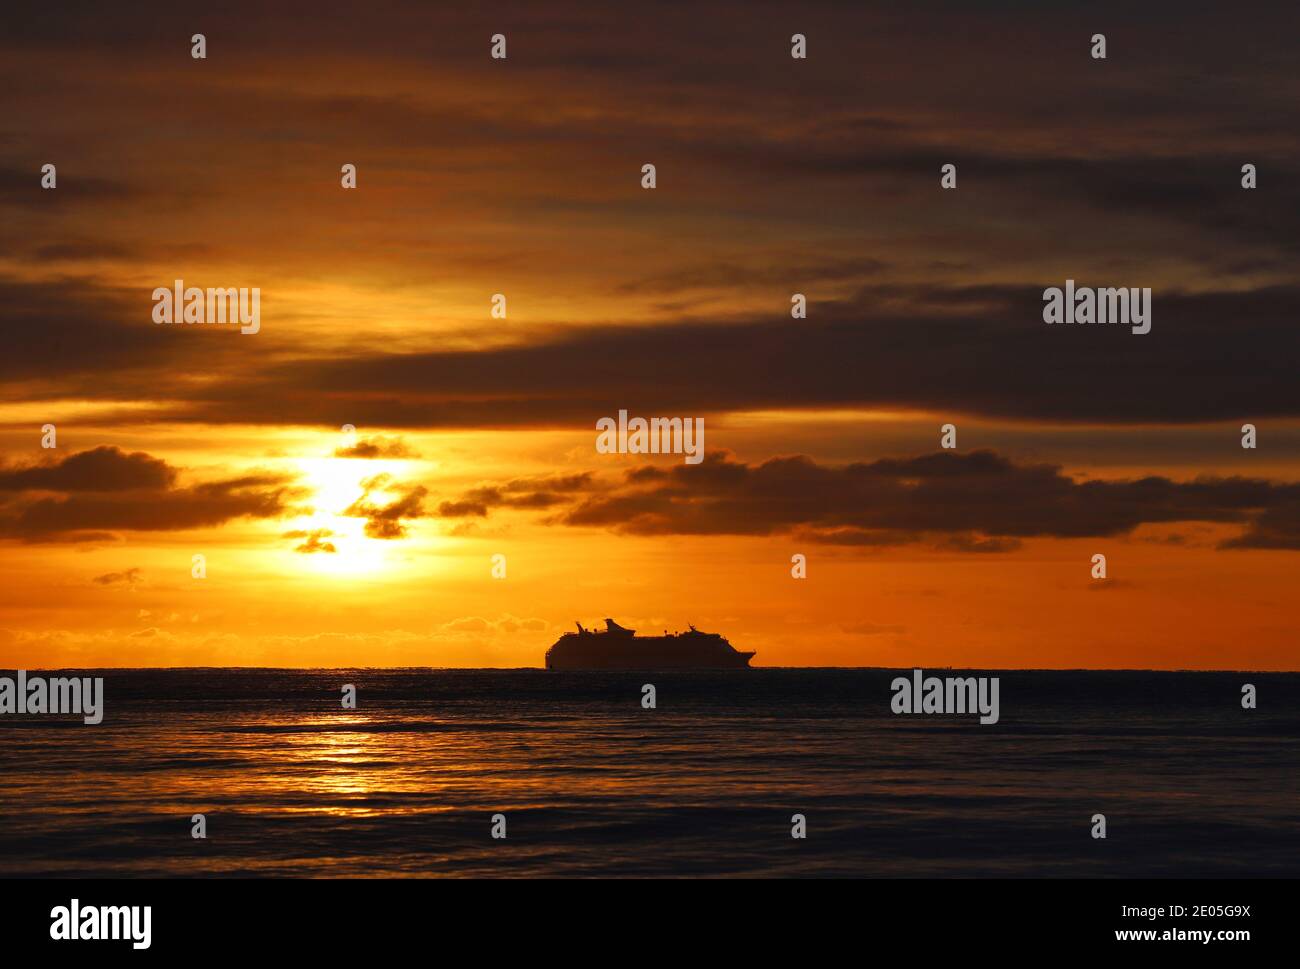 Un crucero se perfila en el horizonte contra un cielo de invierno por la mañana lleno del cálido color dorado del sol naciente que brotan a través de las nubes. Foto de stock